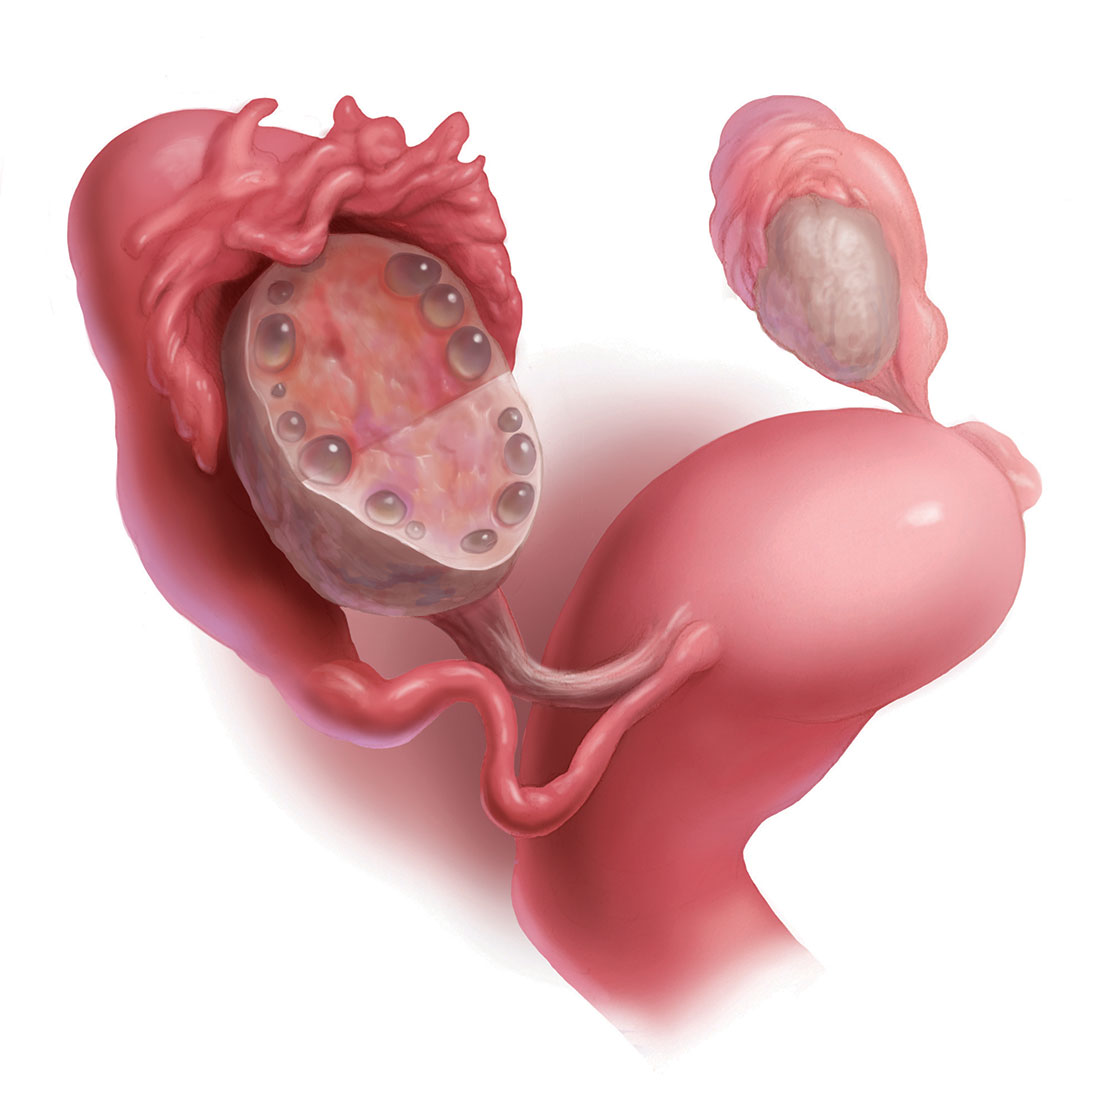 polycystic ovaries treatment pregnancy